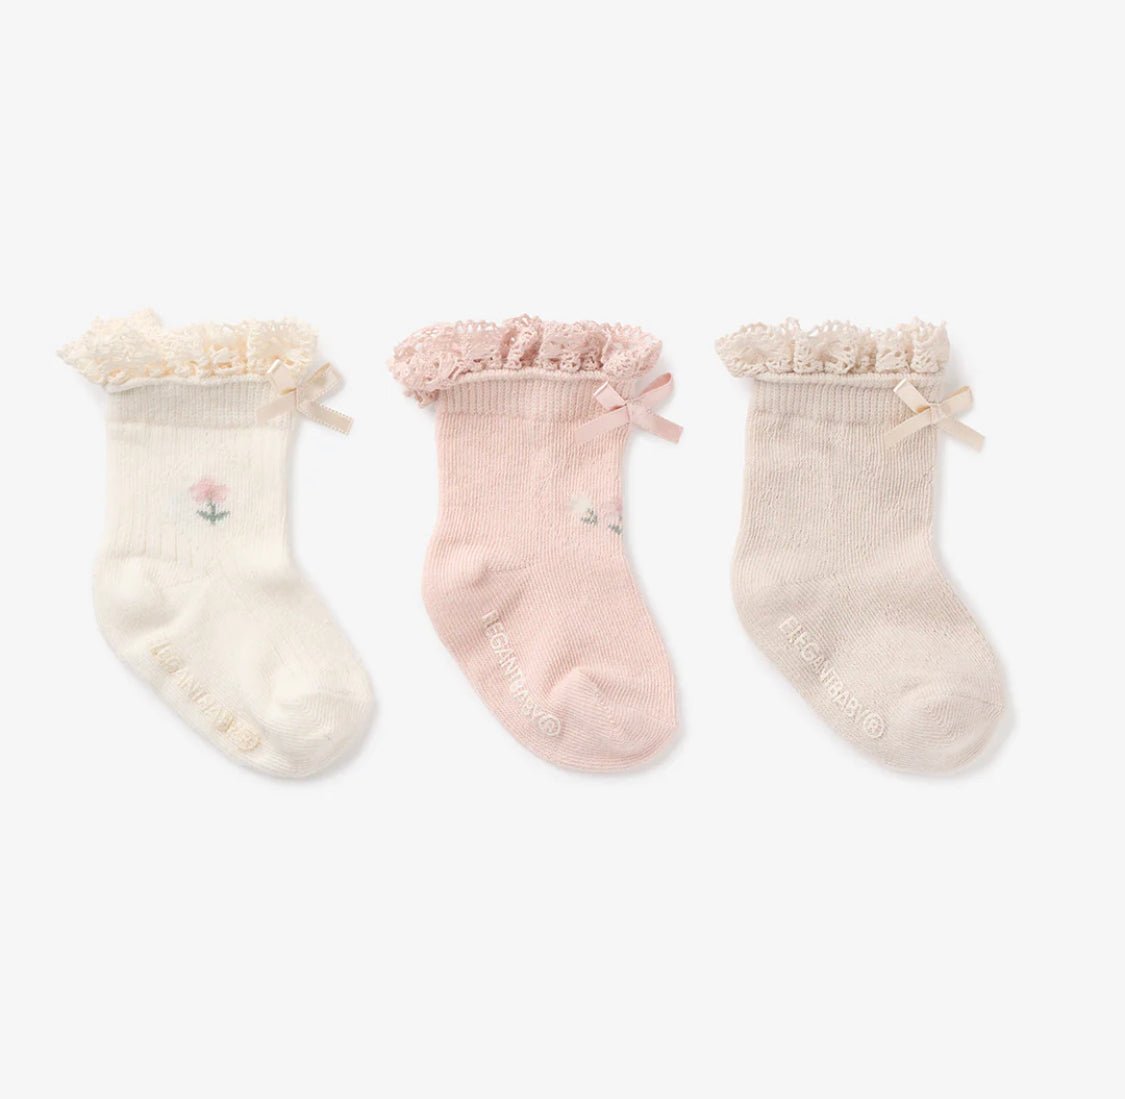 Socks - 3pk - Floral Ankle - Wren Harper